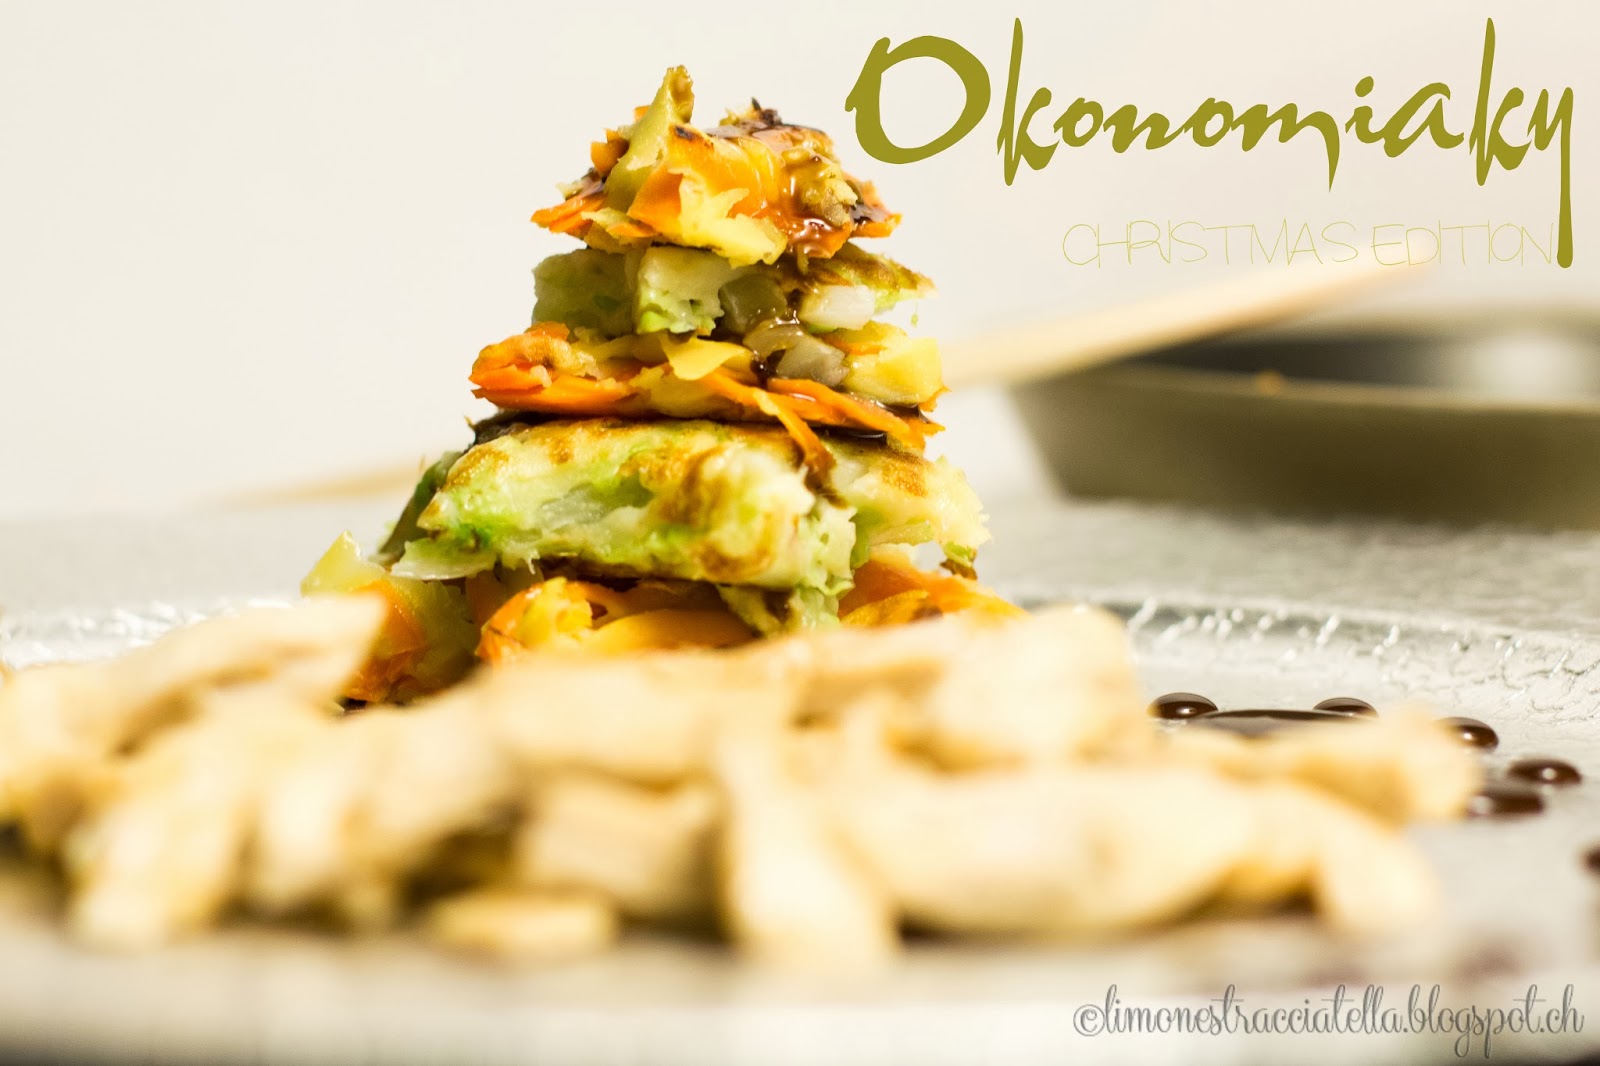 meglio tardi che mai: okonomiaky christmas edition (ma anche no)